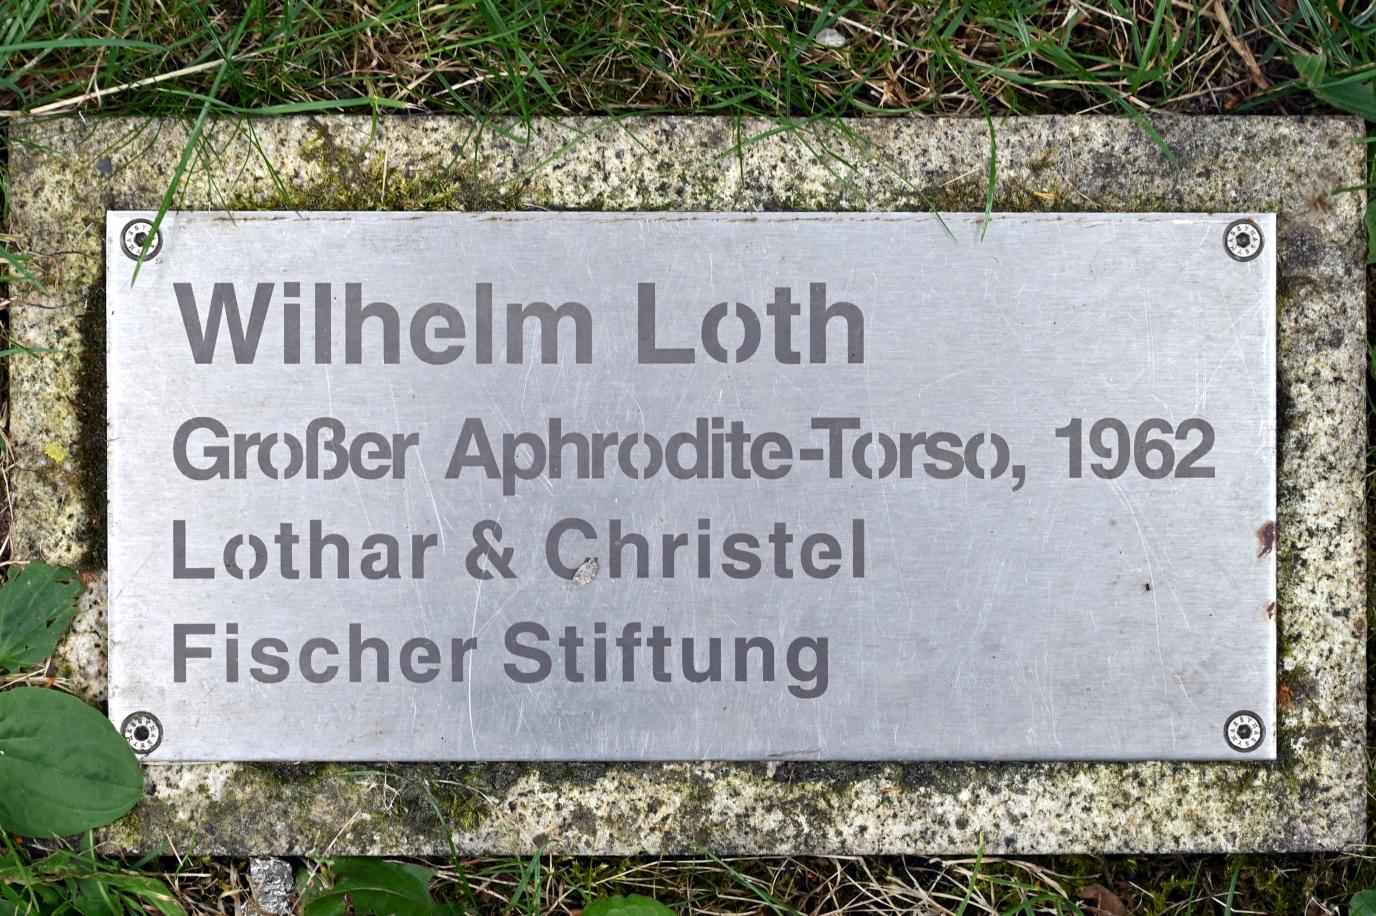 Wilhelm Loth (1962), Großer Aphrodite-Torso, Neumarkt in der Oberpfalz, Museum Lothar Fischer, Außenbereich, 1962, Bild 5/5